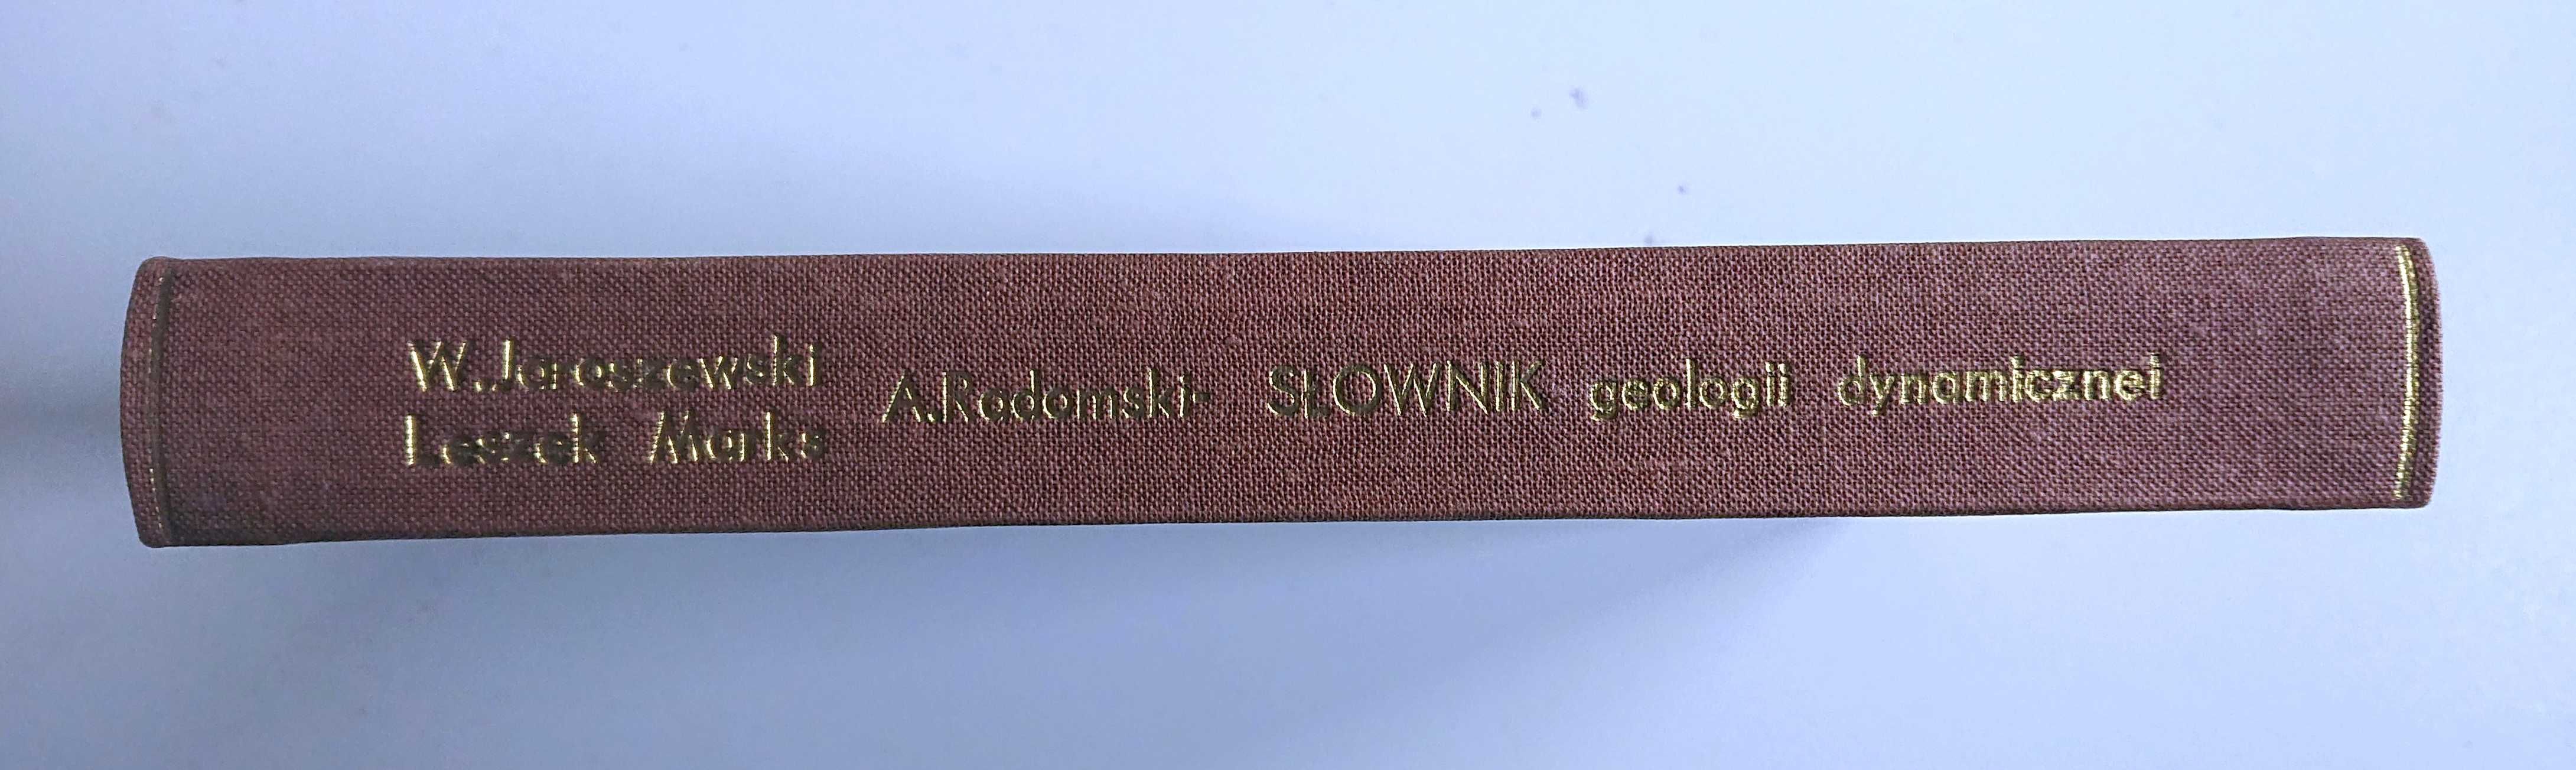 "Słownik geologii dynamicznej" - 1985 - Jaroszewski, Marks, Radomski